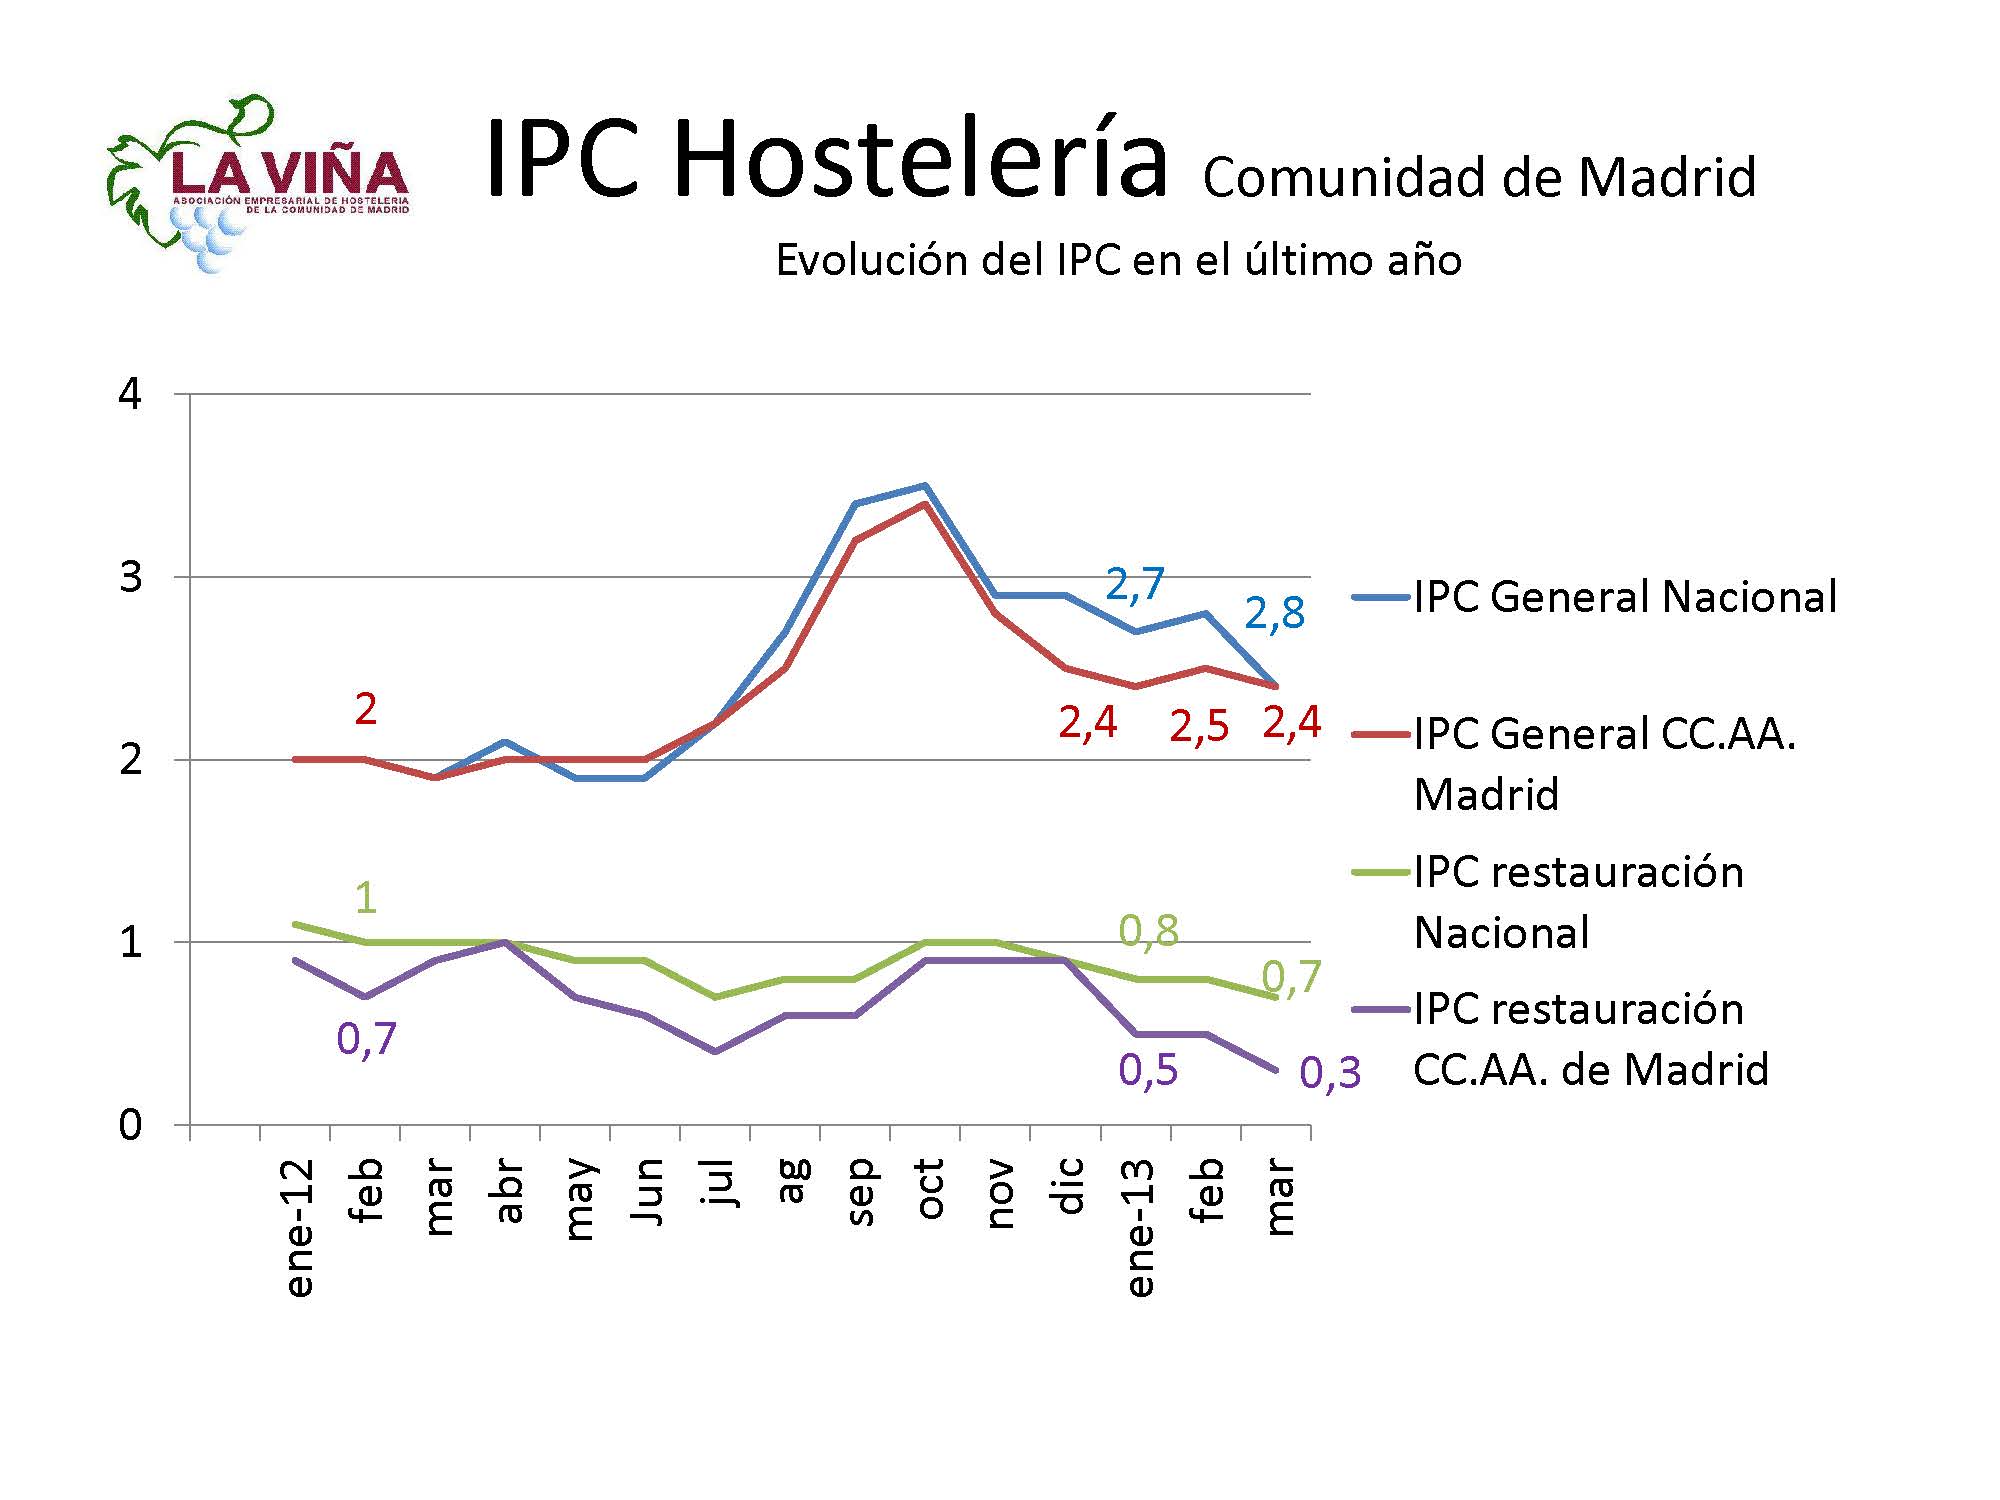 Los precios de bares y rtes. madrileños suben en marzo un 0,3% frente al 2,4% del IPC regional - La Viña